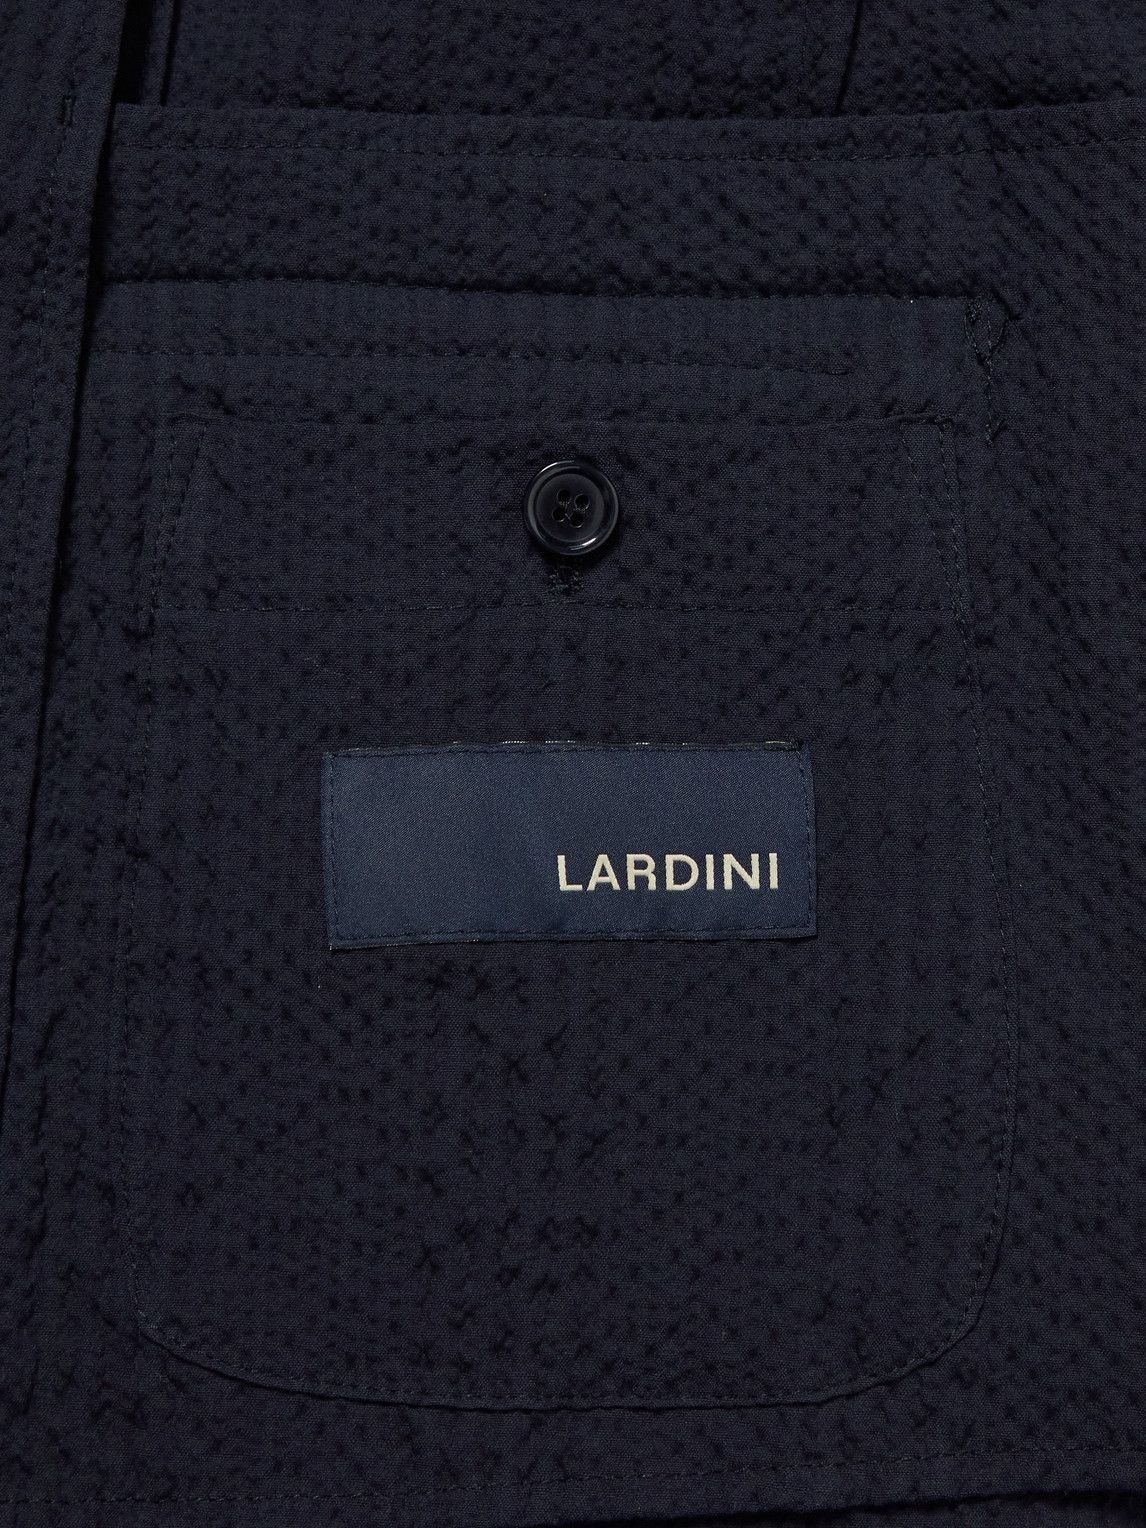 Lardini - Slim-Fit Unstructured Cotton-Blend Seersucker Blazer